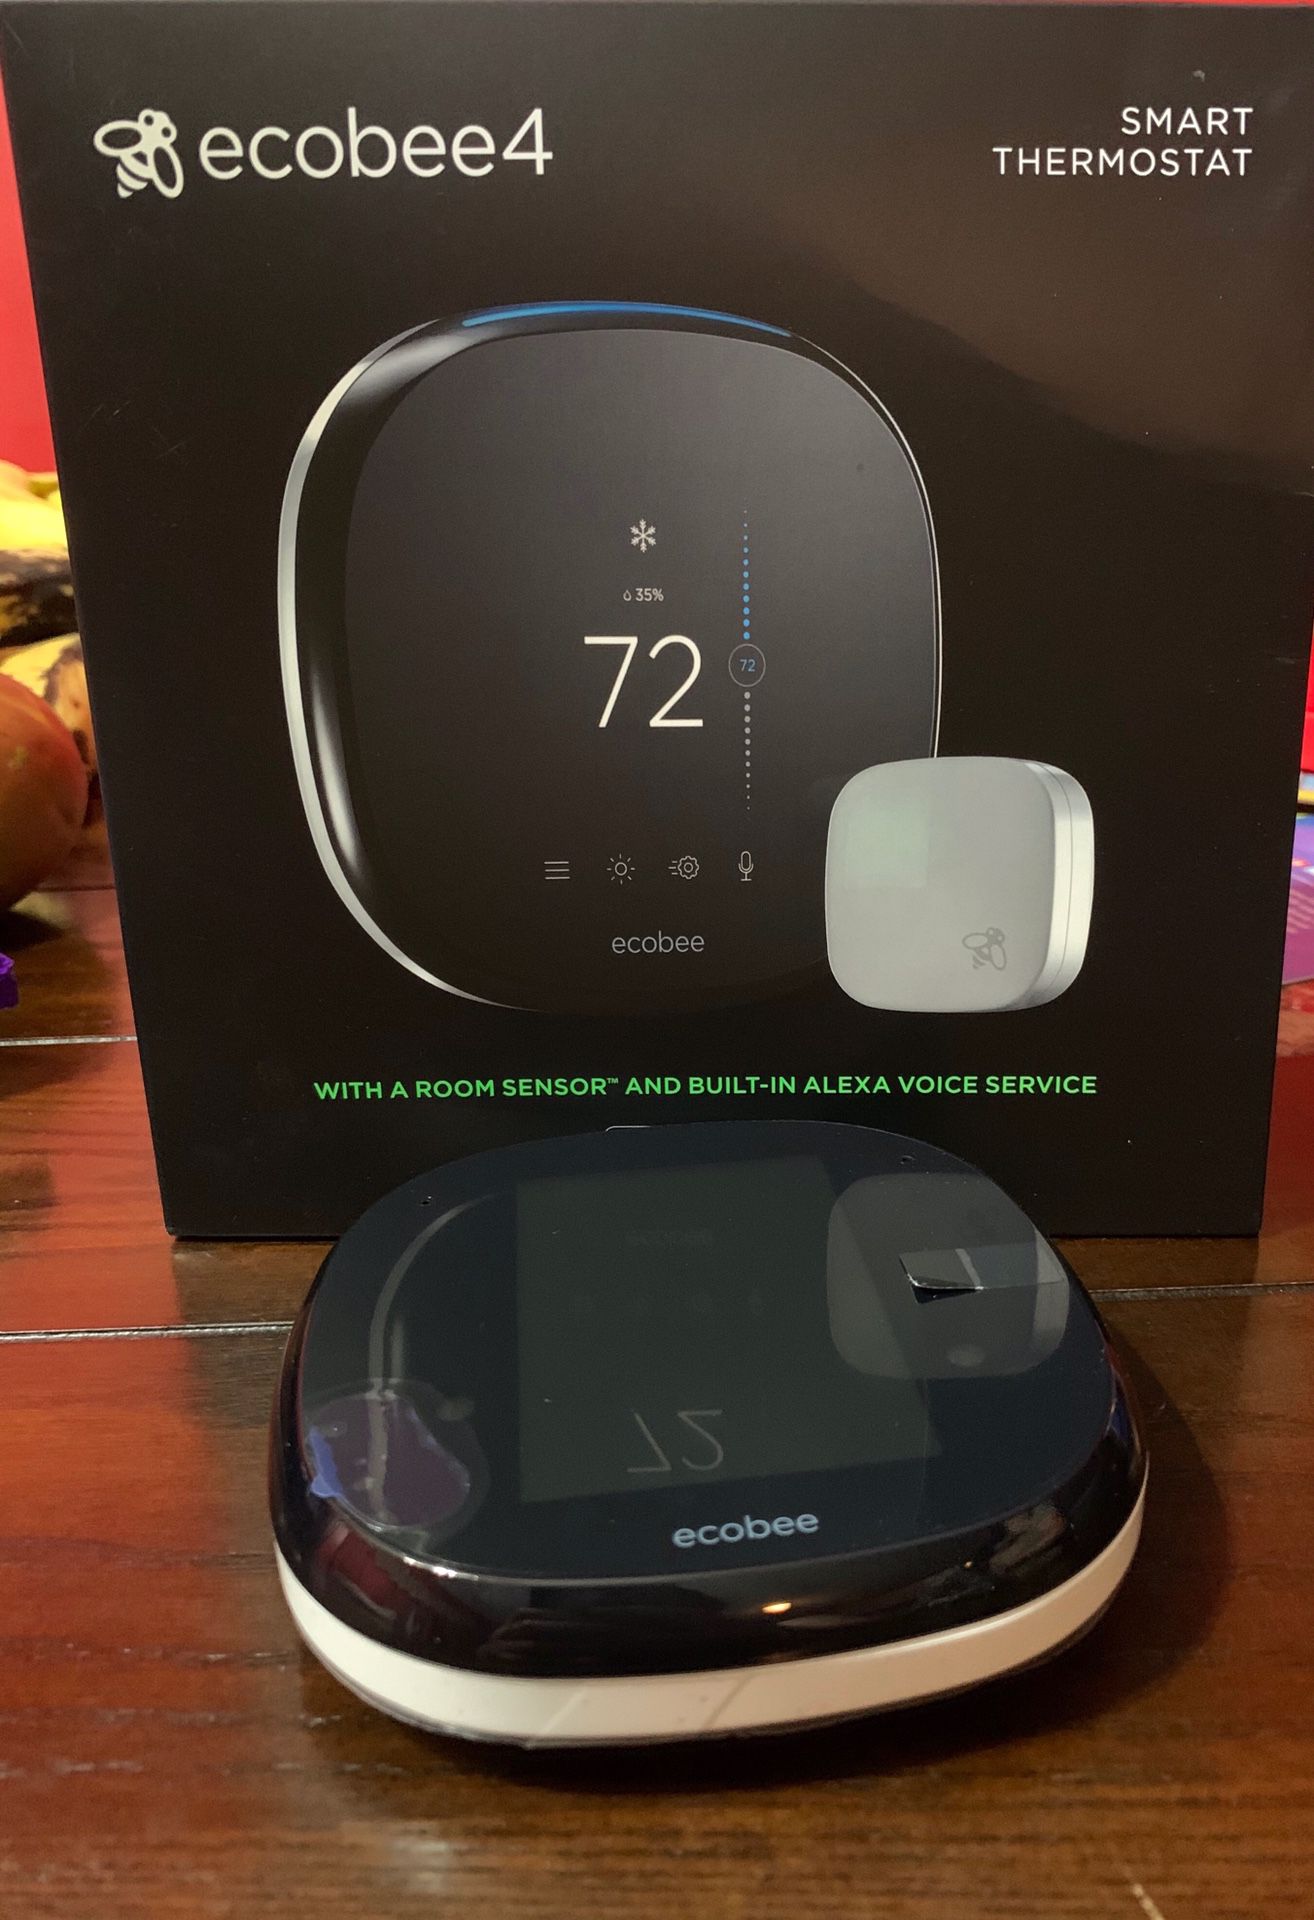 Smart thermostat ecobee4